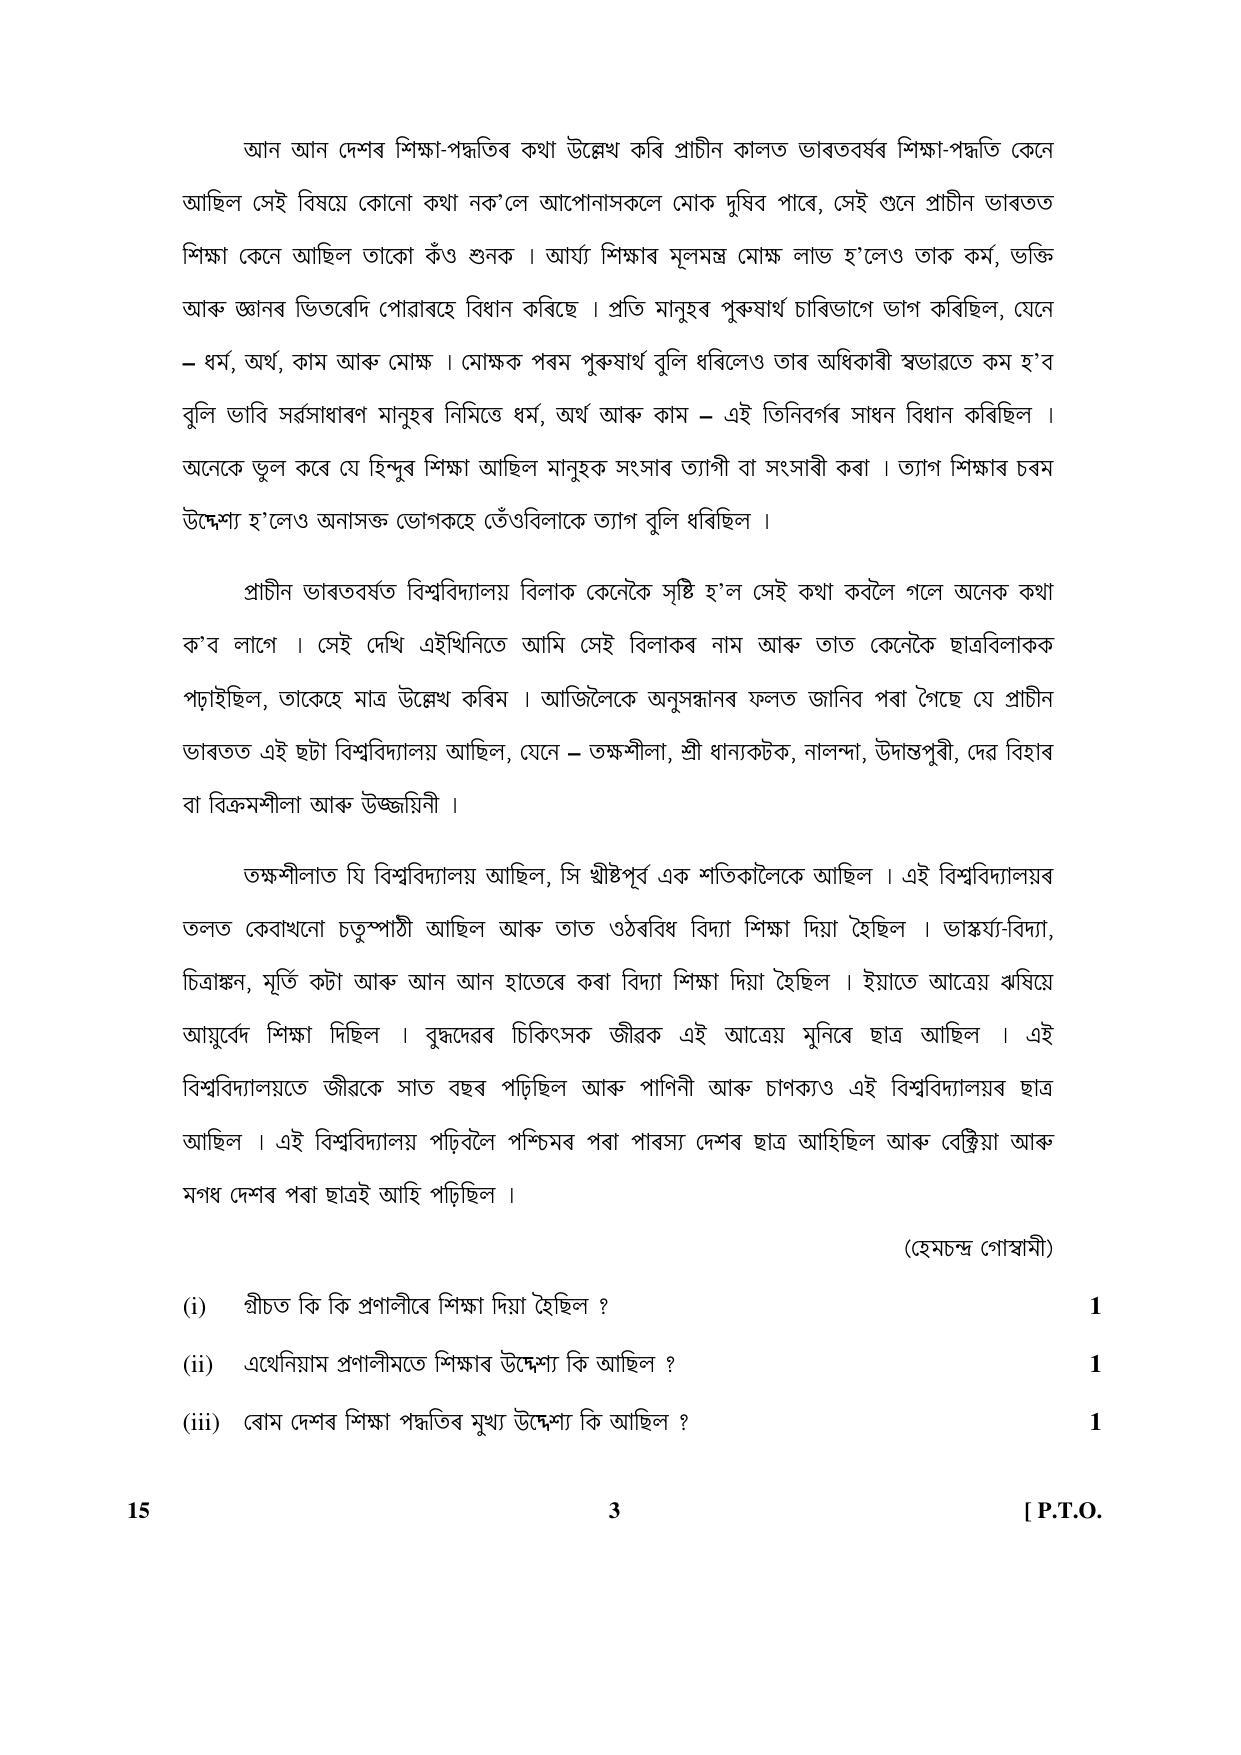 CBSE Class 10 15 (Assamese) 2017-comptt Question Paper - Page 3